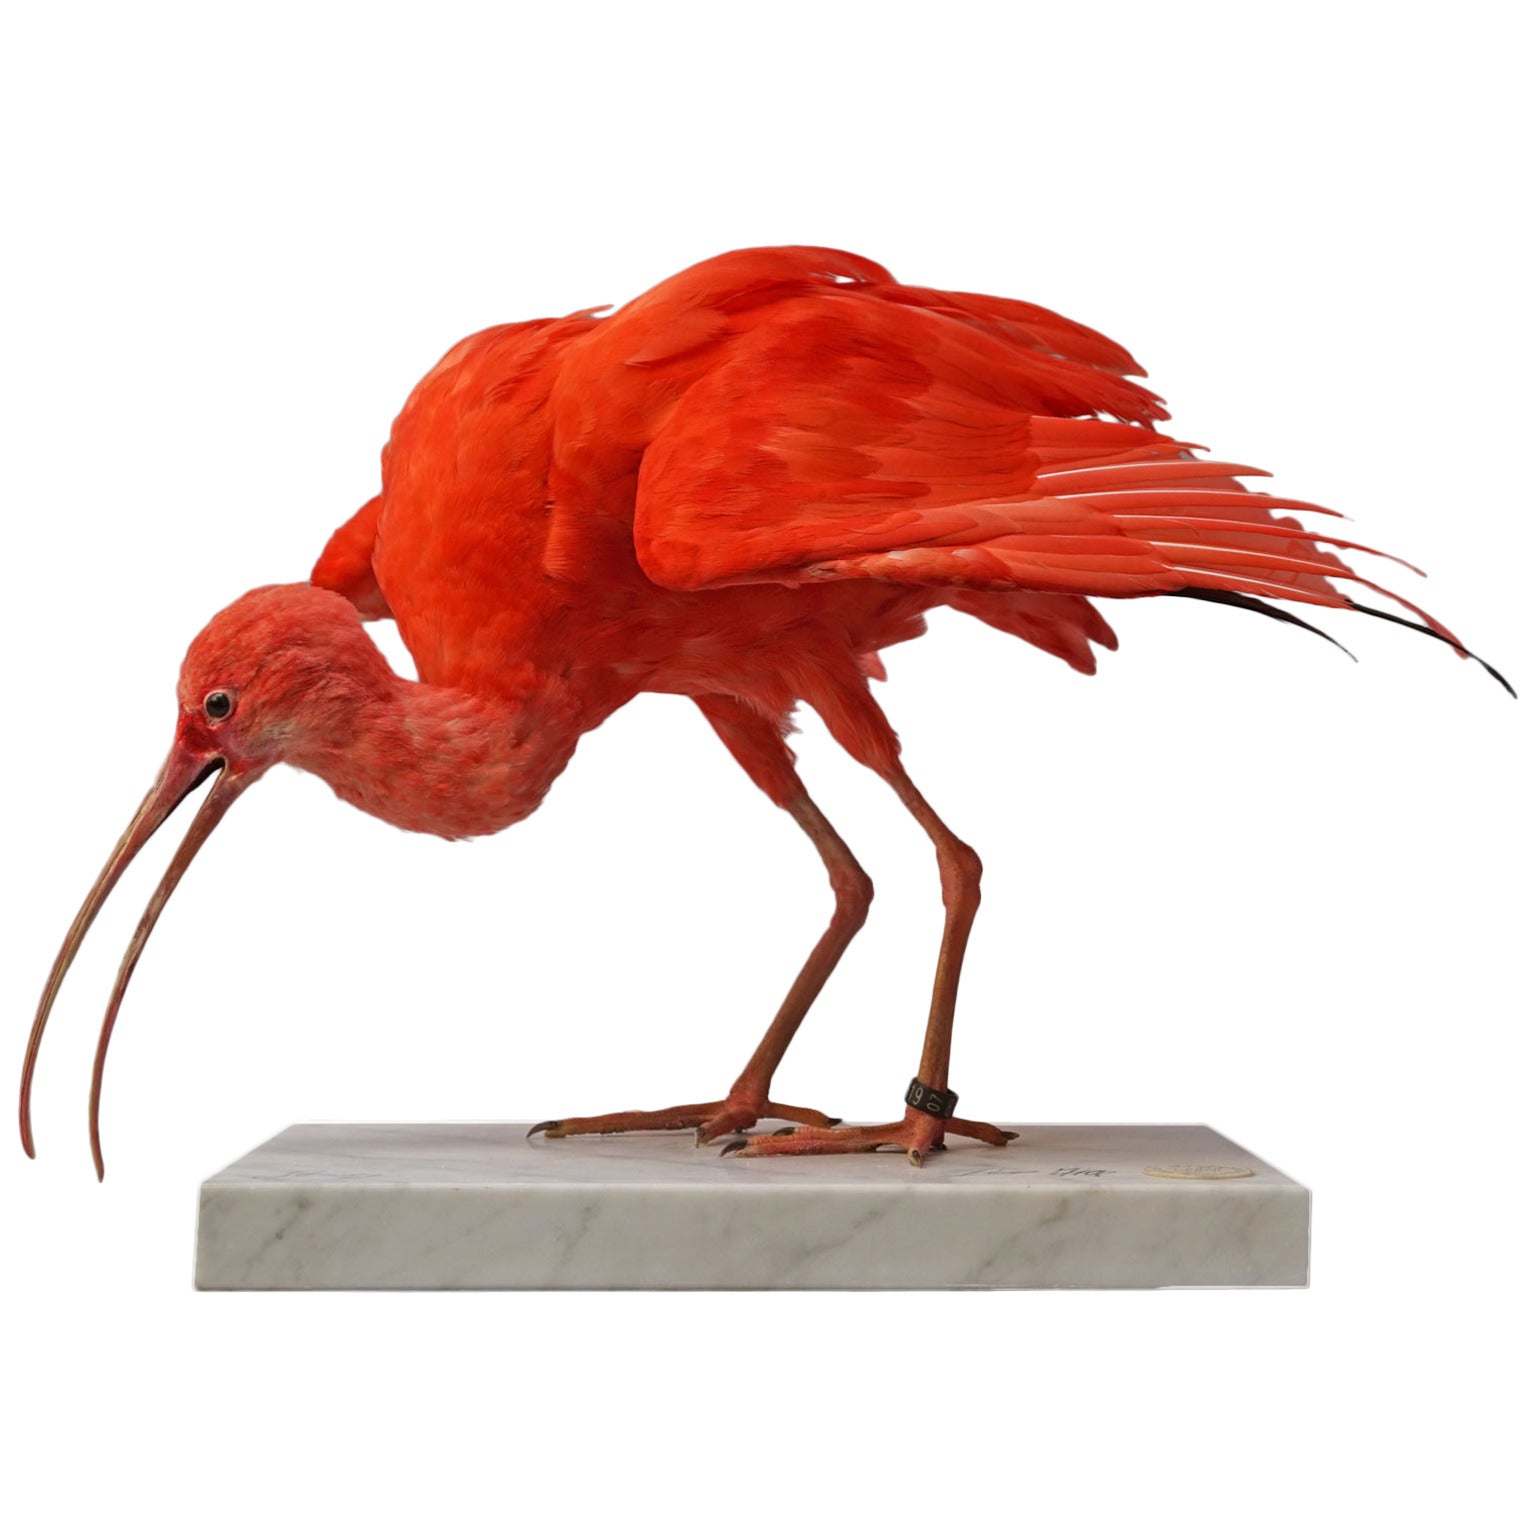 Taxidermy Study 'Scarlet Ibis' by Sinke & Van Tongeren